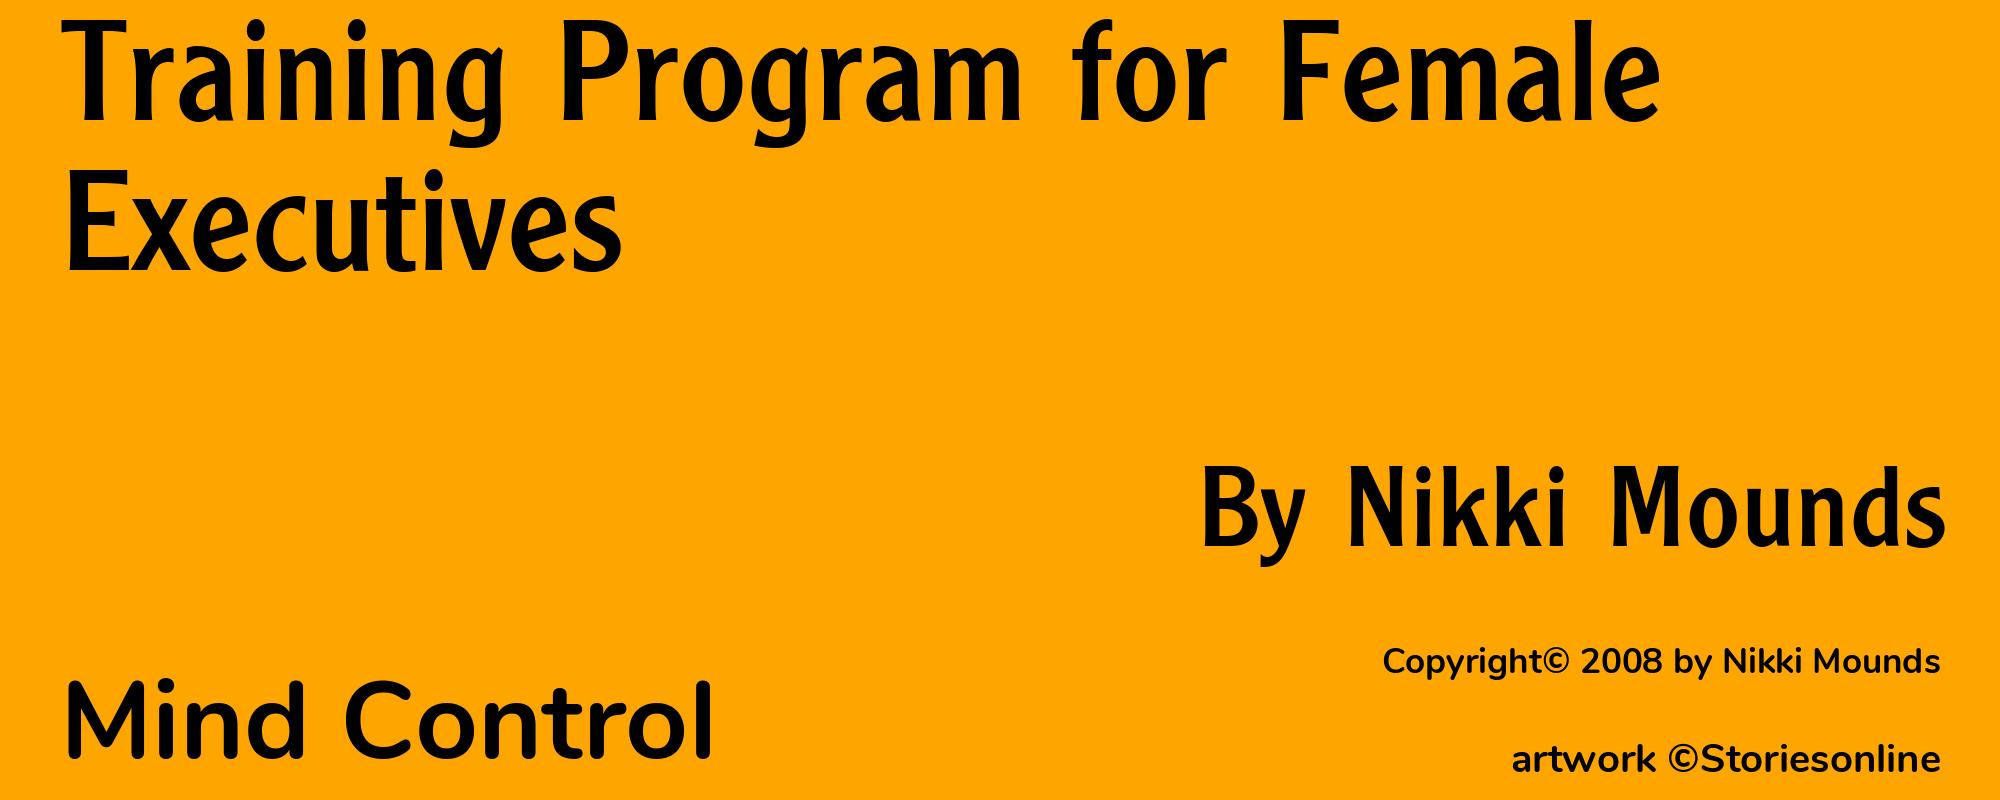 Training Program for Female Executives - Cover